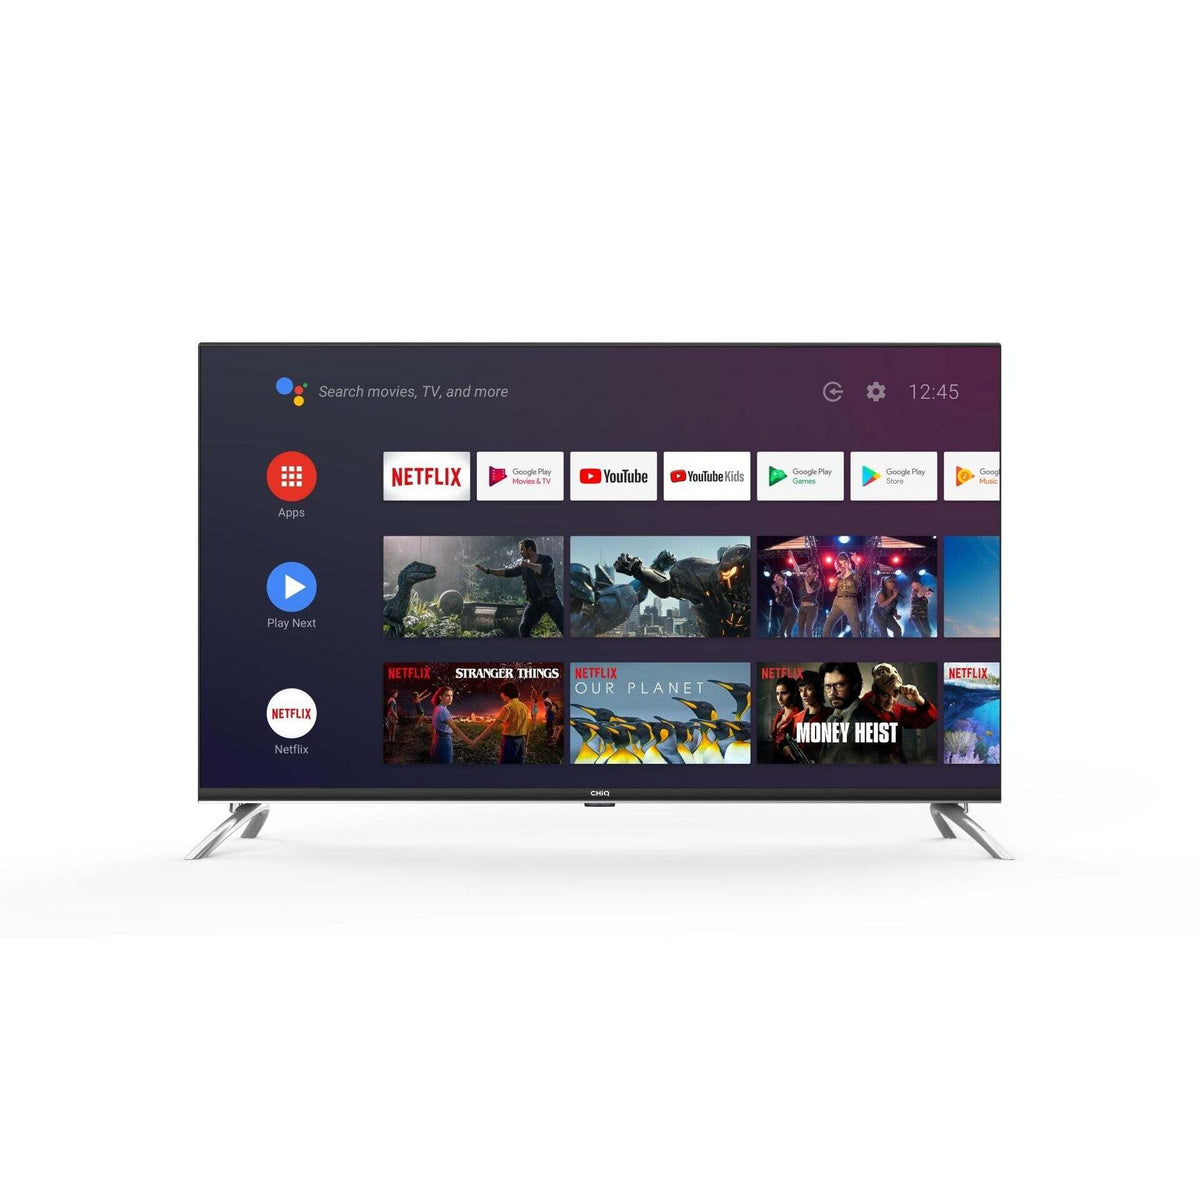 Smart televízor CHiQ L40H7A 2021 / 40&quot; (102 cm)